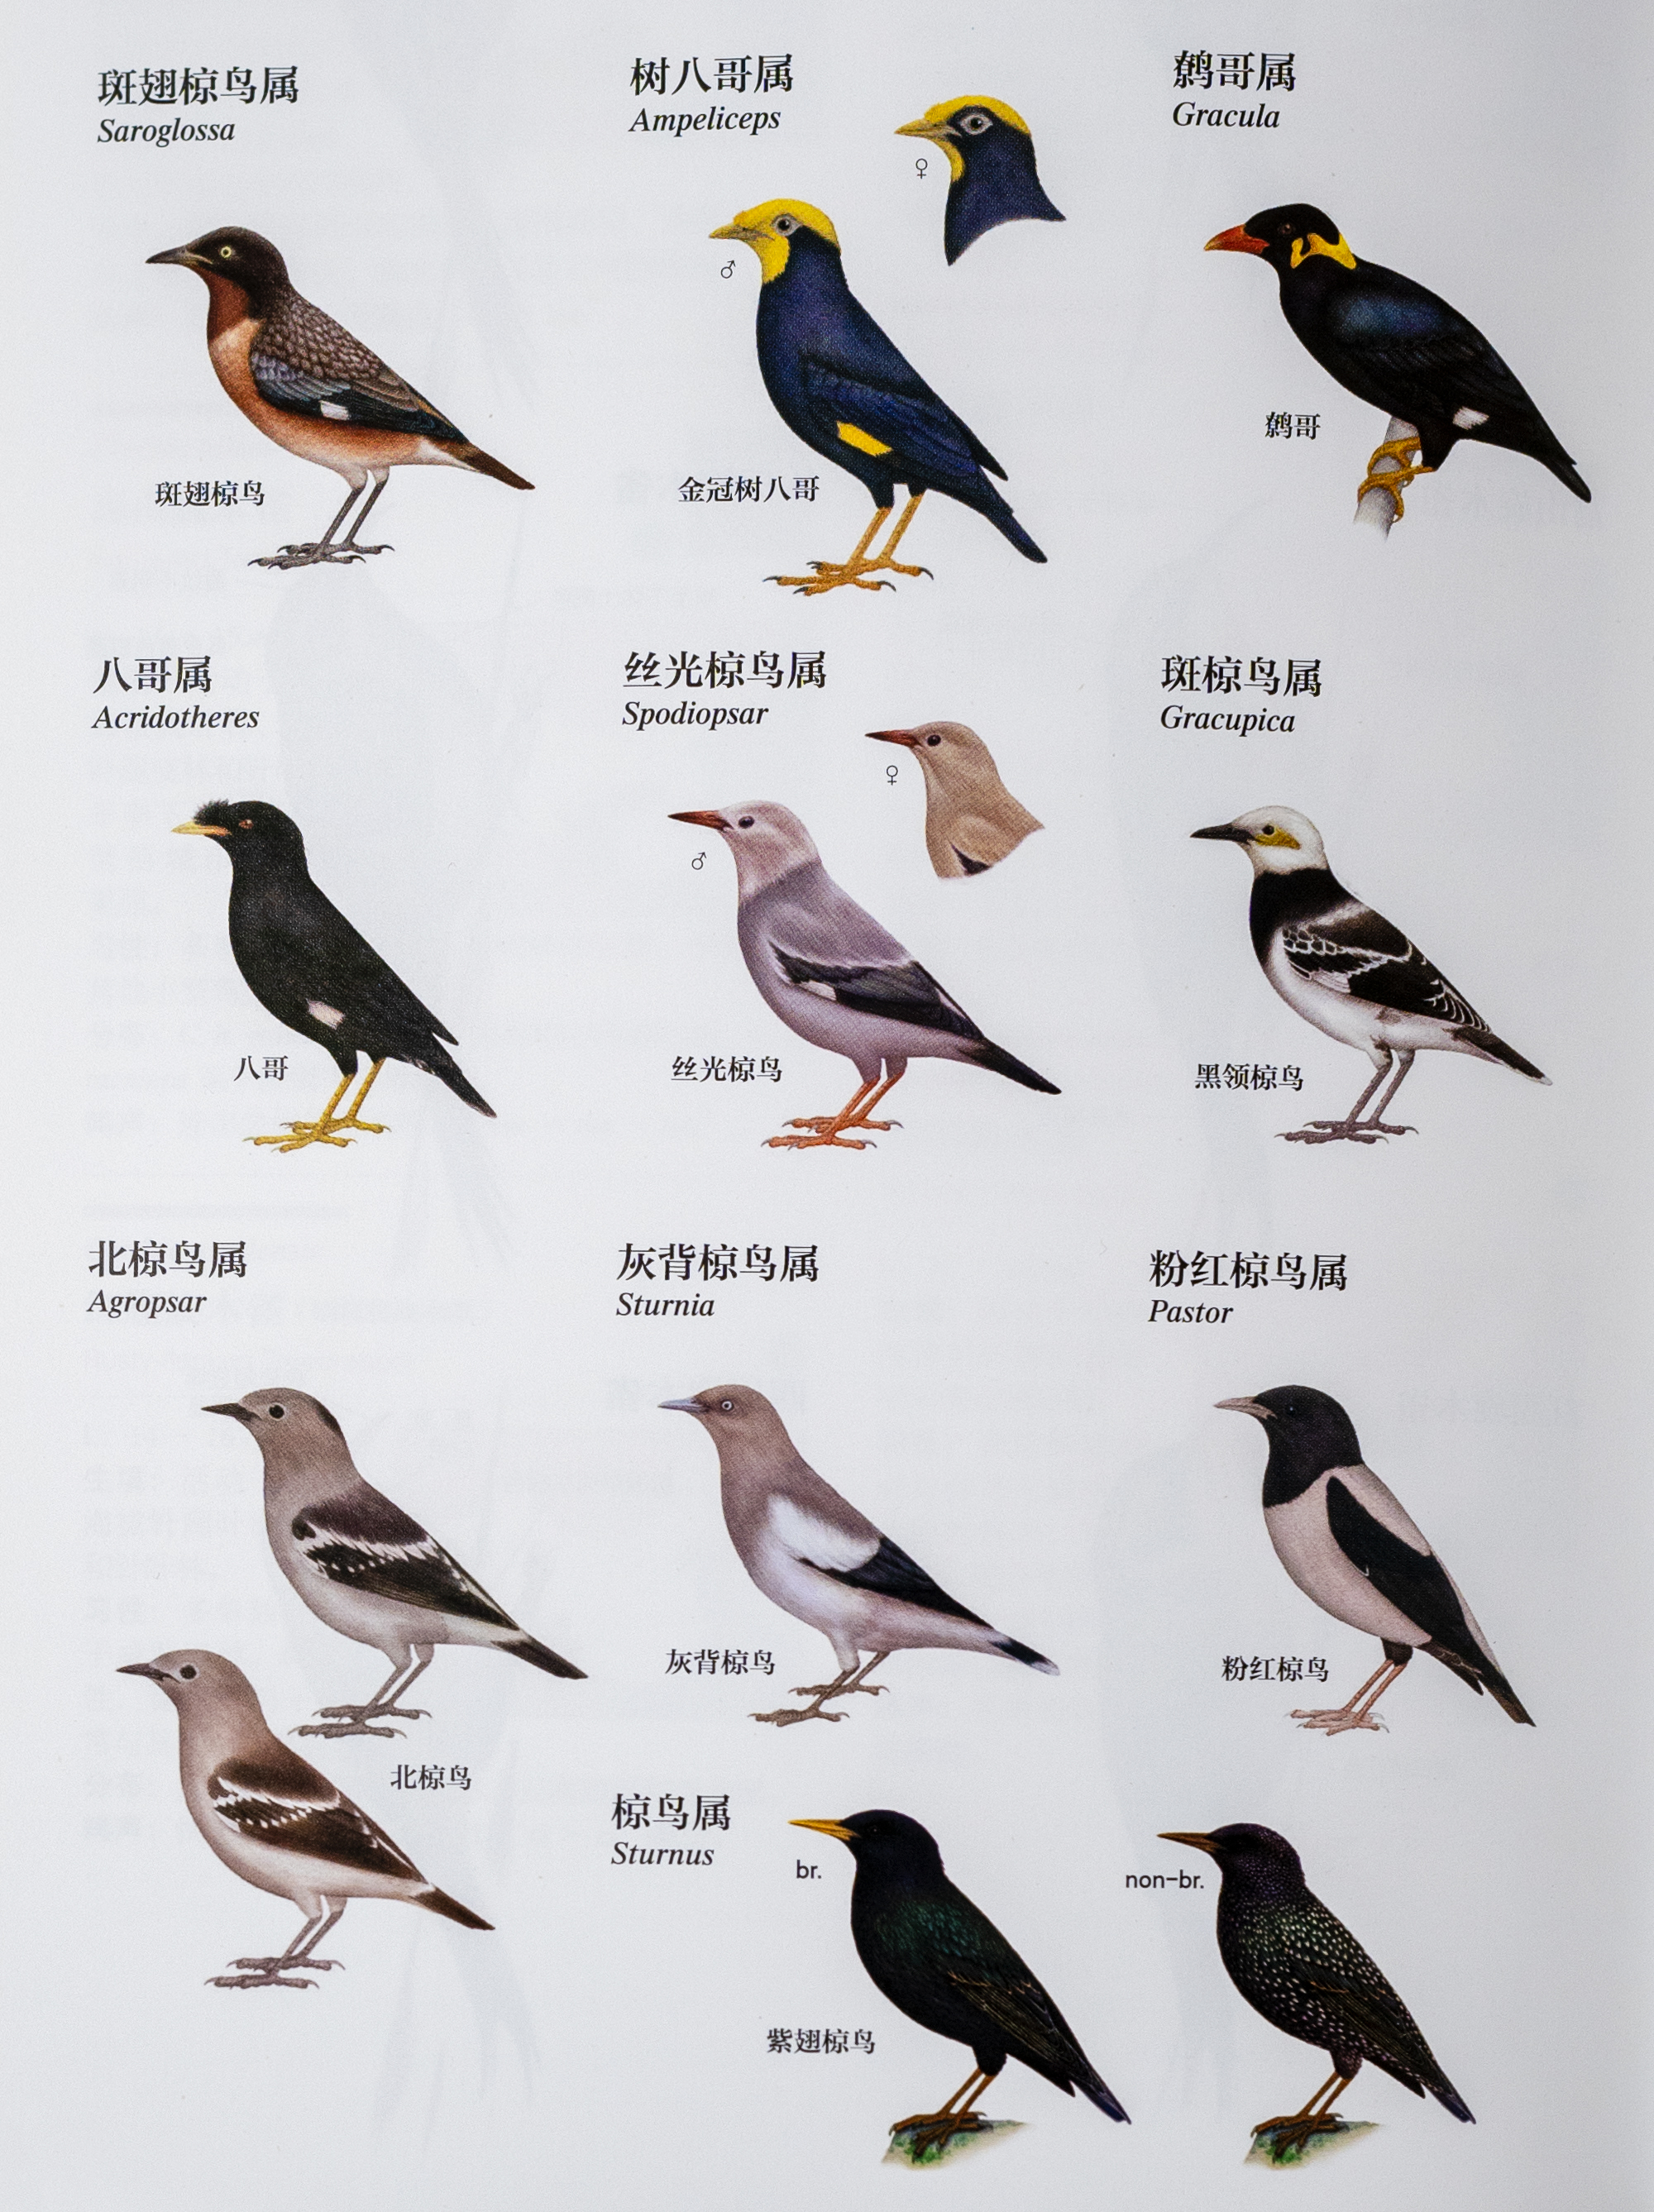 全部种类的椋鸟都被列入《世界自然保护联盟》(iucn)2012年濒危物种